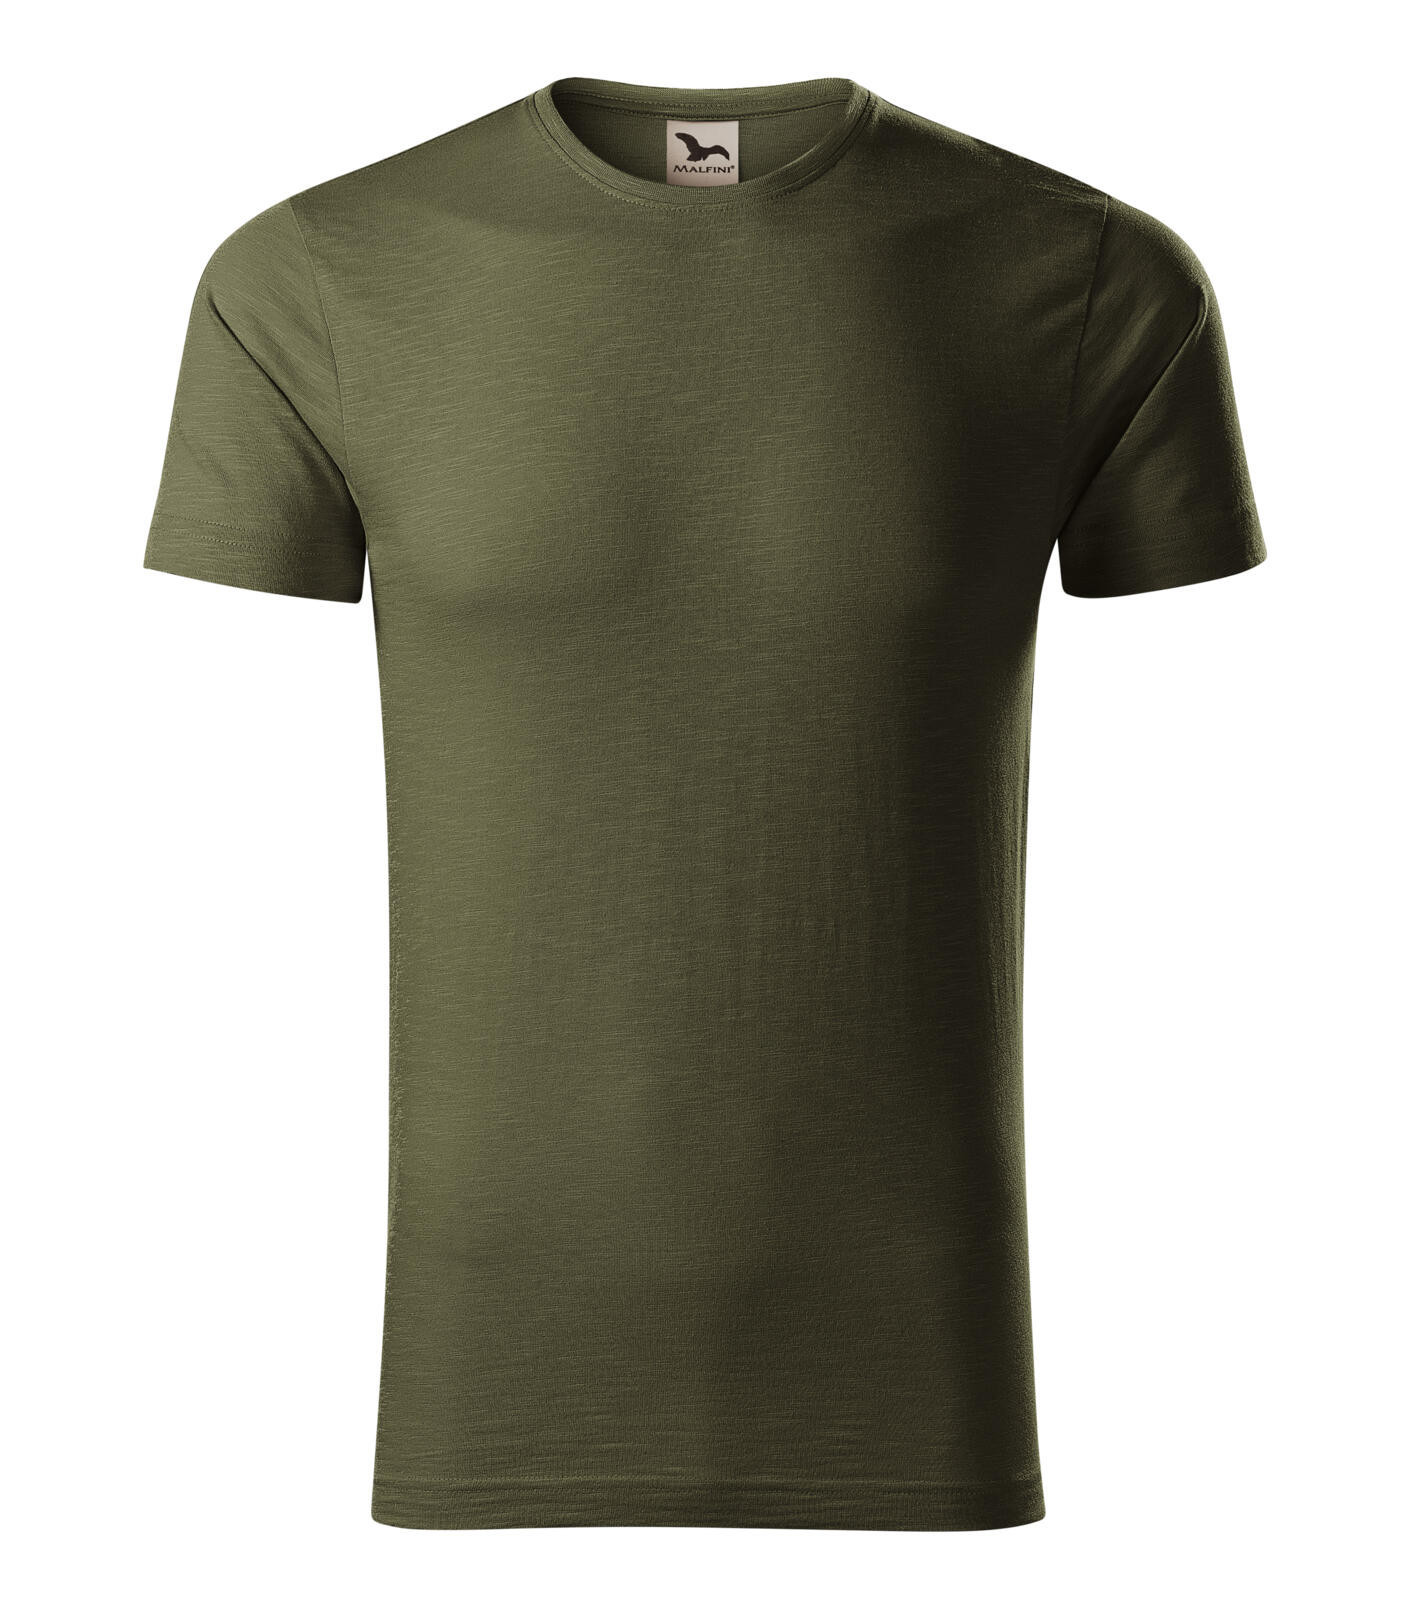 Pánske bavlnené tričko Malfini Native 173 - veľkosť: L, farba: military